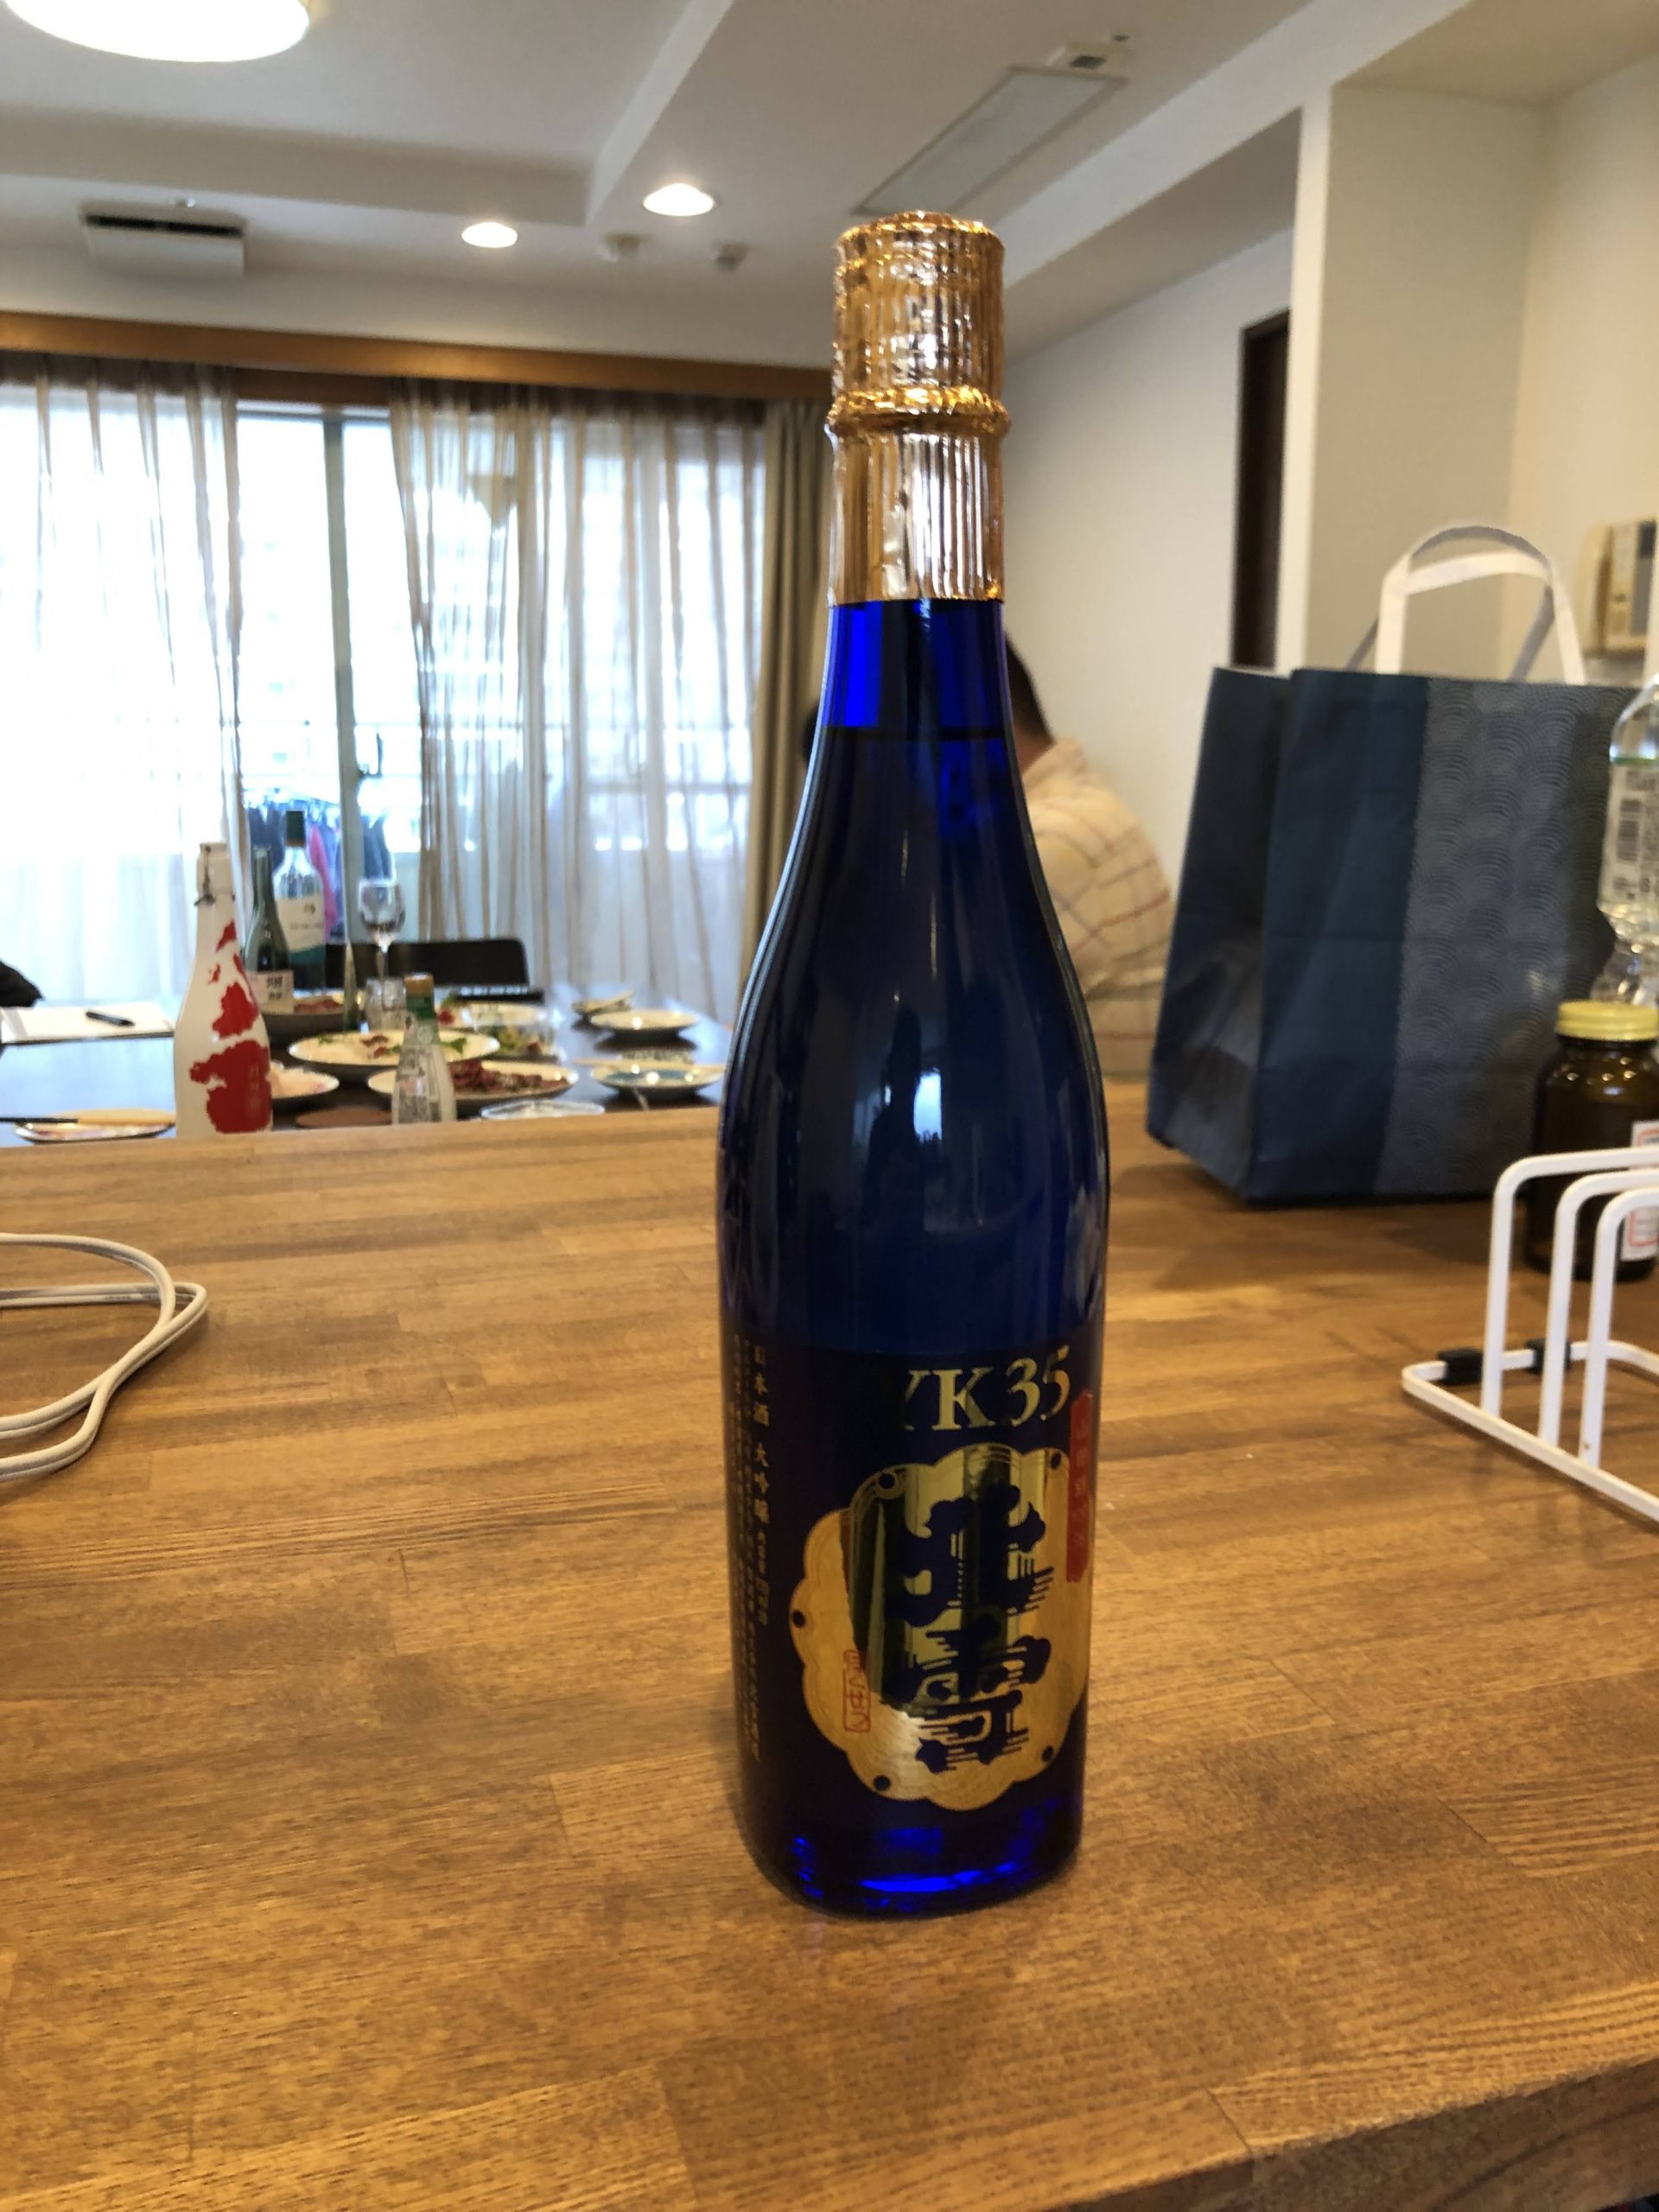 伊勢丹でもお目にかかる高めの日本酒北雪。その味はいかに。YK35とは何か